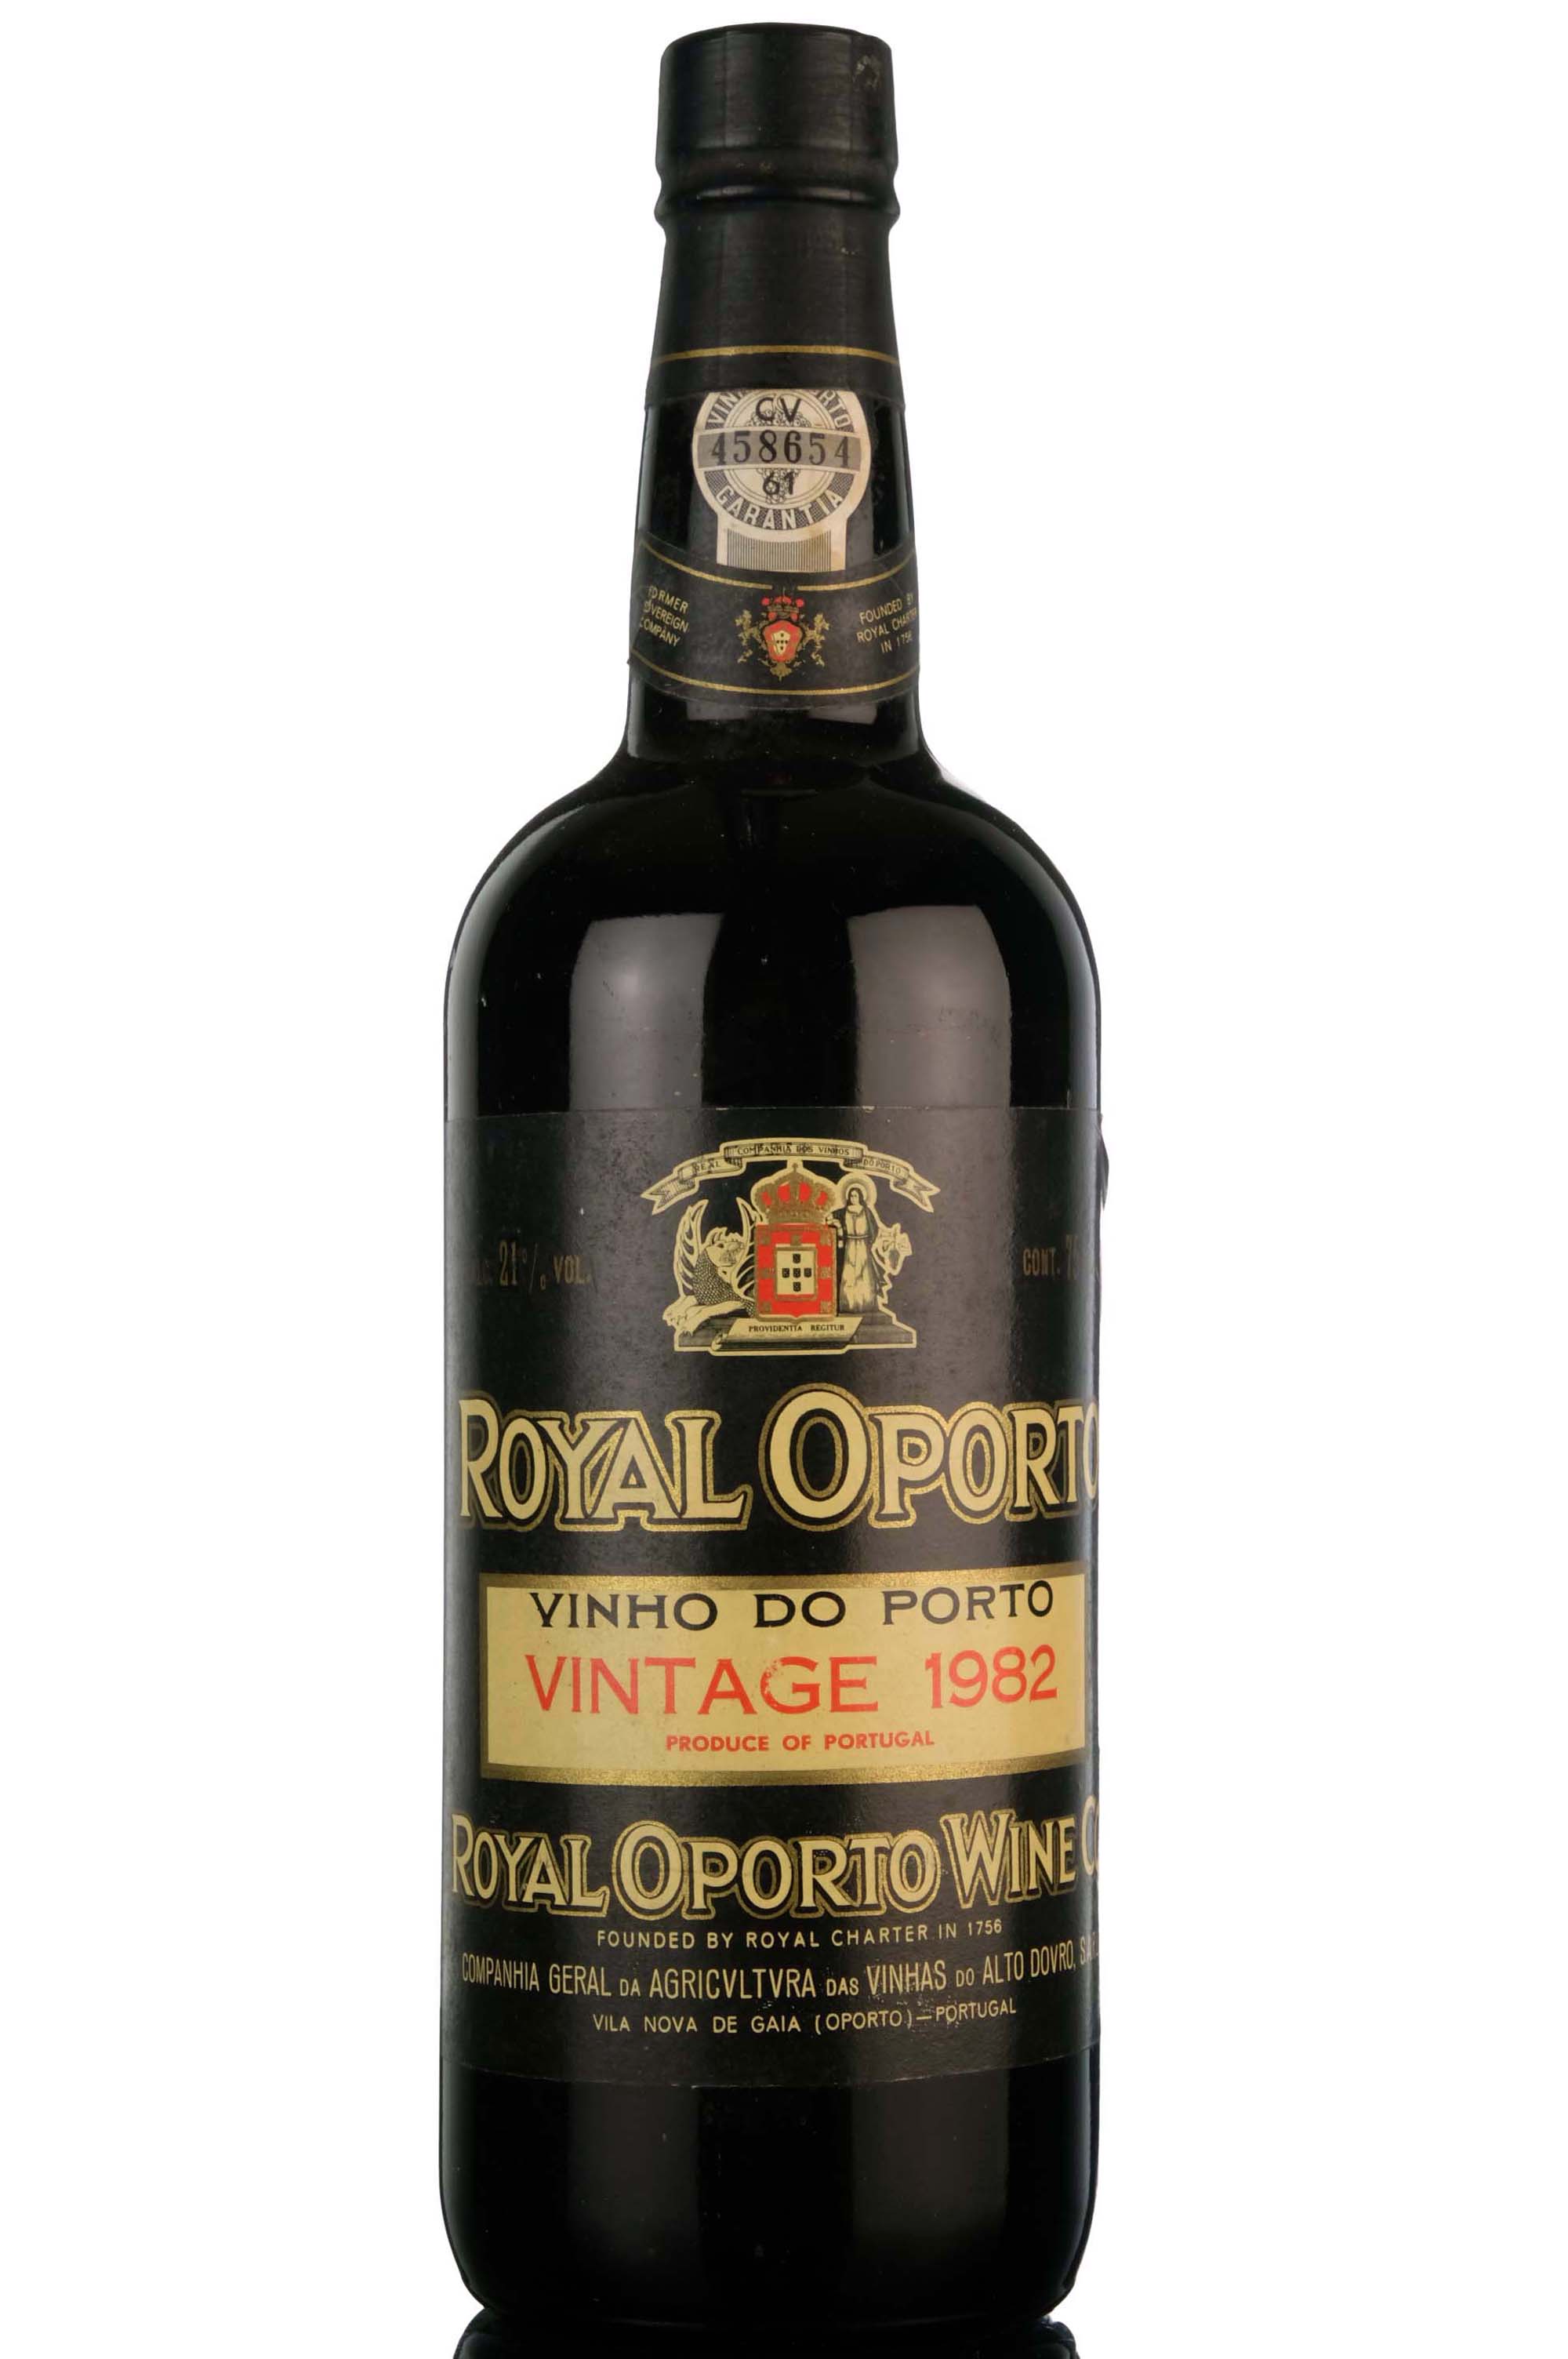 Royal Oporto 1982 Vintage Port